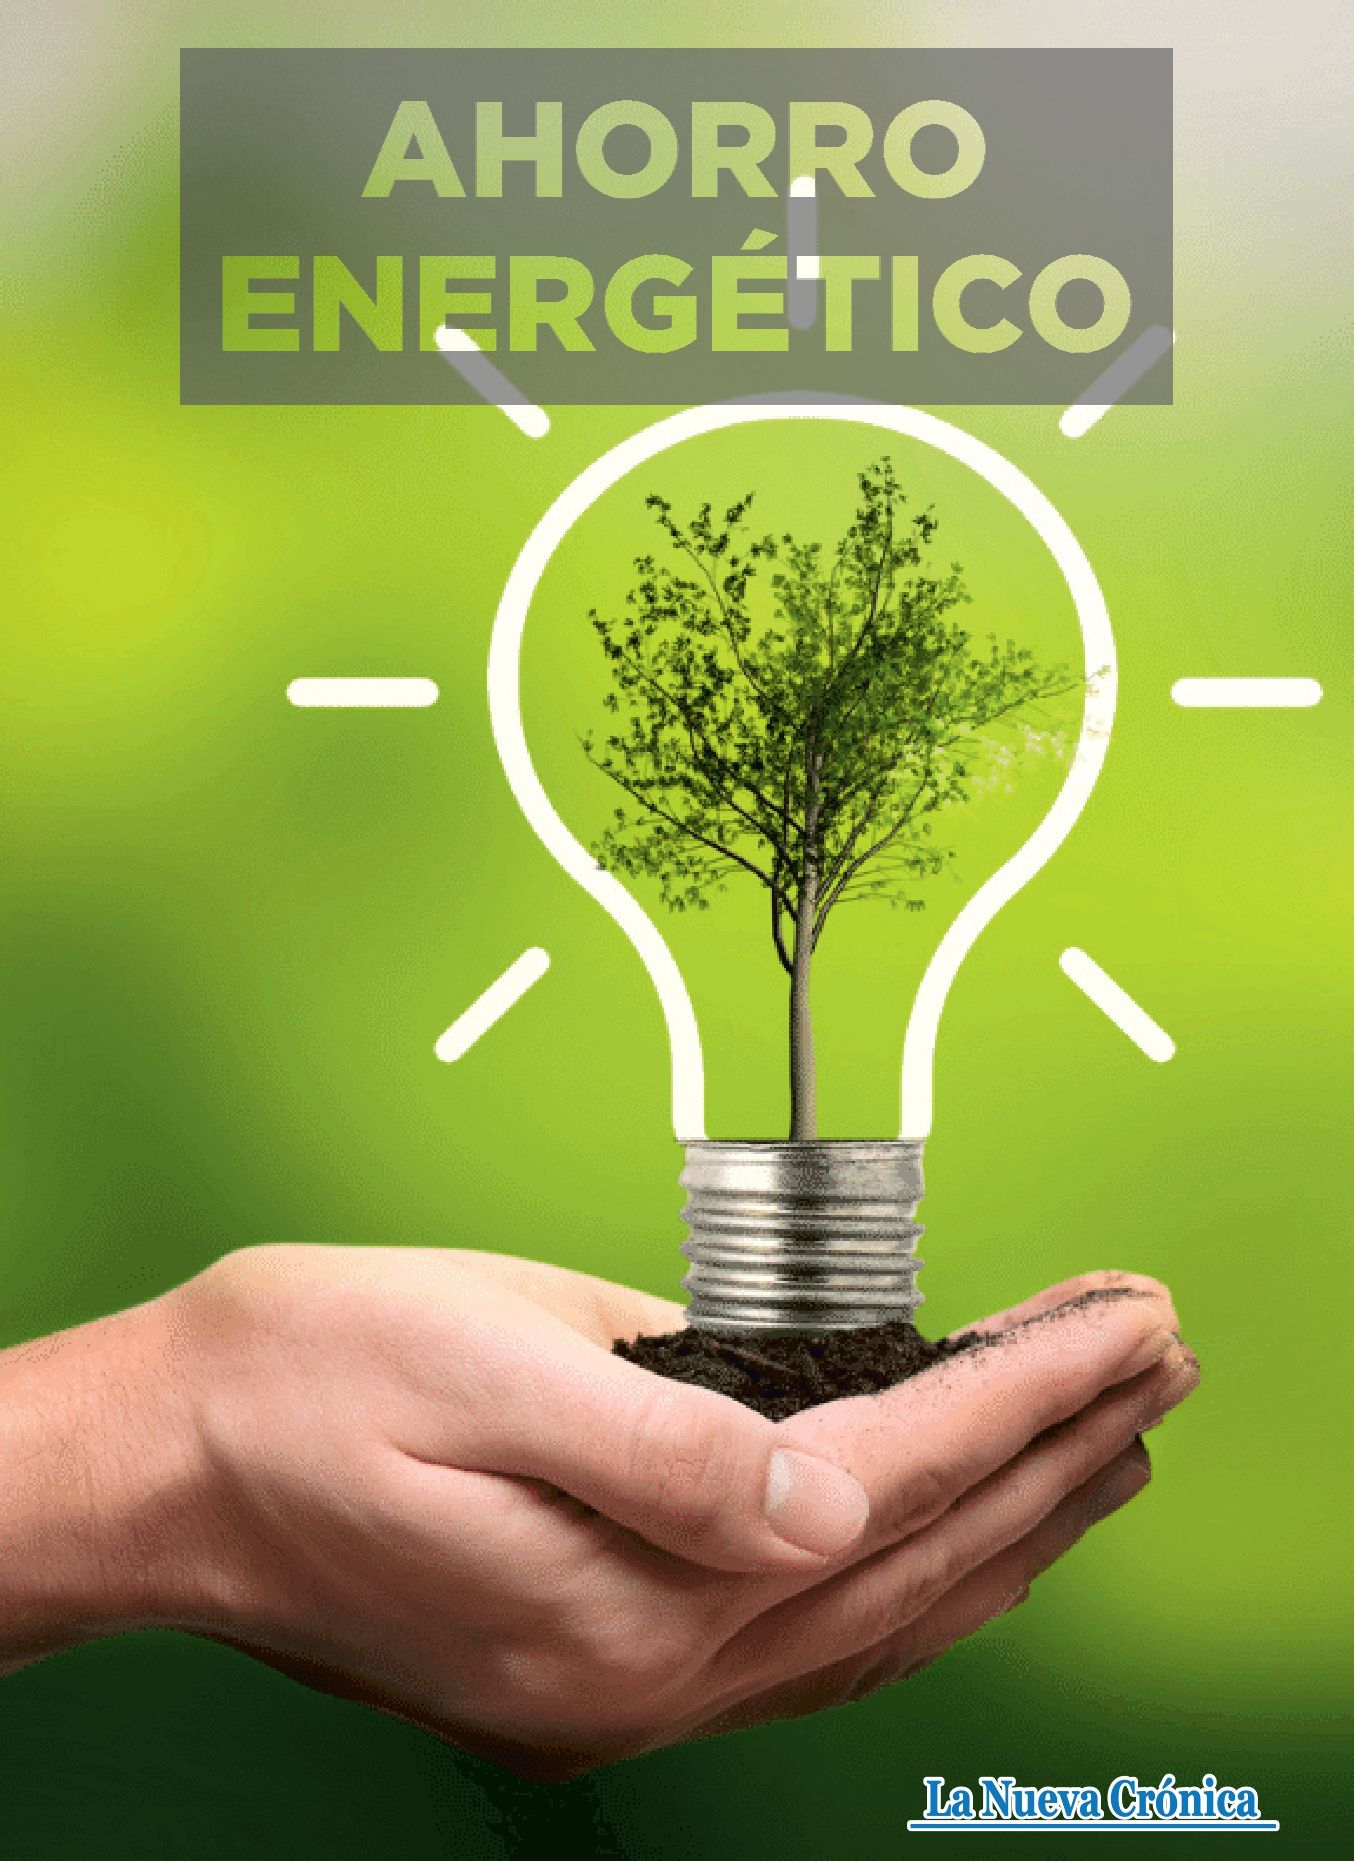 Suplemento especial ahorro energético de La Nueva Crónica. | L.N.C.